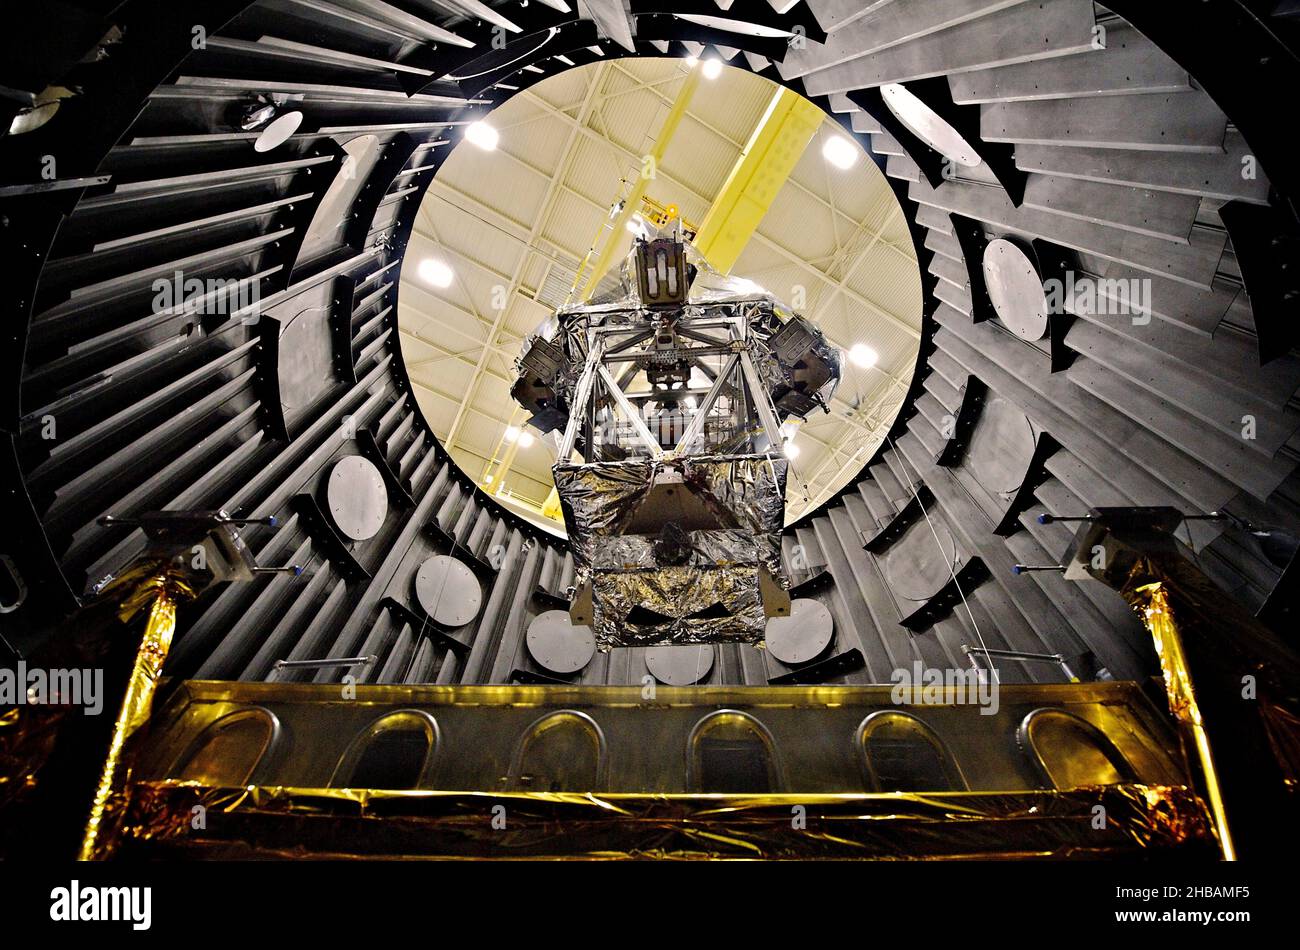 Il telescopio spaziale James Webb è stato sviluppato congiuntamente dalla NASA, dall'Agenzia spaziale europea e dall'Agenzia spaziale canadese. E 'previsto per succedere al telescopio spaziale Hubble come missione astrofisica di punta della NASA. Il simulatore OTE (Optical Telescope Element) o OSIM avvolto in una coperta d'argento su una piattaforma, essendo abbassato in una camera a vuoto (chiamata Space Environment Simulator, o SES) da una gru per essere testato per resistere alle basse temperature dello spazio. Marshall Space Flight Center, Huntsville, Alabama, USAÊ credito: NASA Goddard/C.GunnÊ solo per uso editoriale. Foto Stock